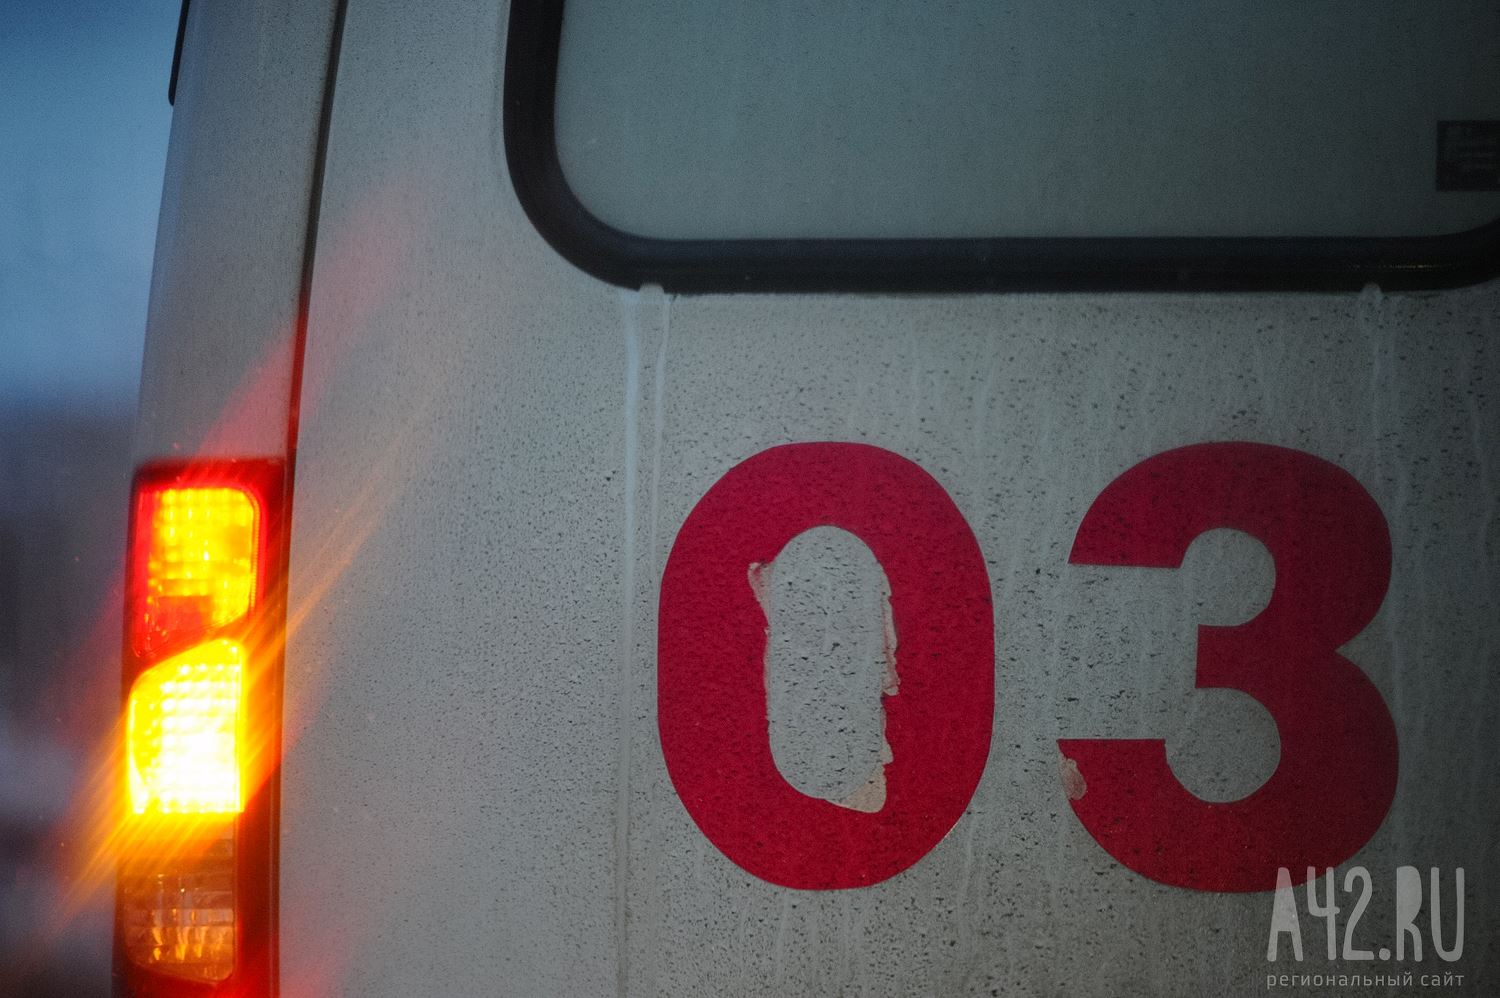 Водитель погиб на месте: очевидцы сообщили о смертельном ДТП в Междуреченске